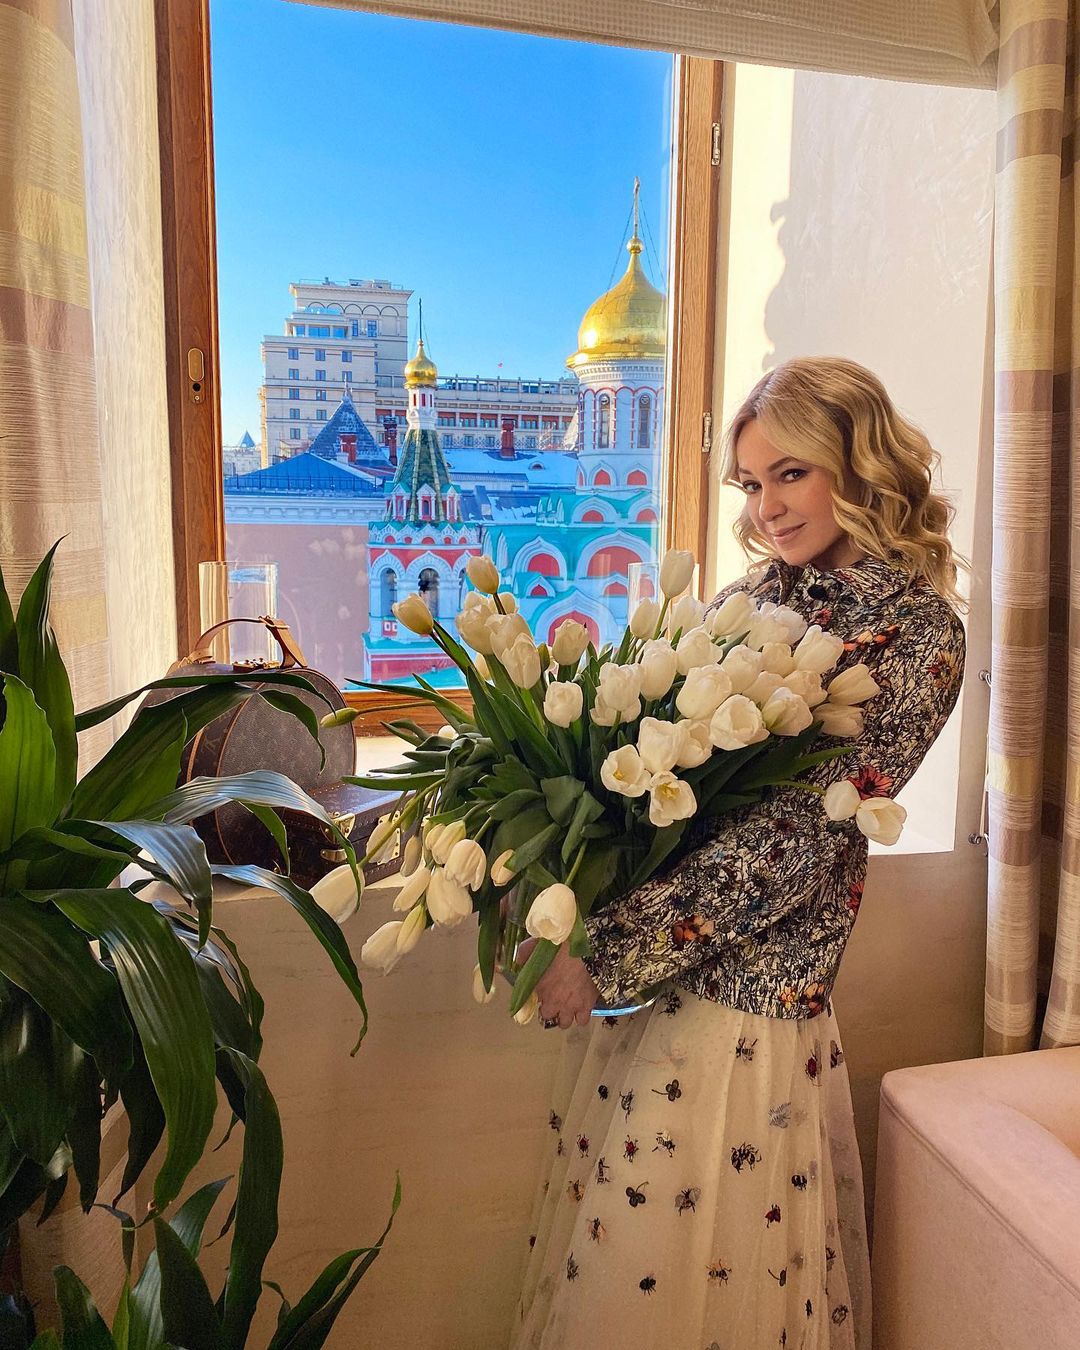 Яна Рудковская заняла последнее место в "Топ-20 российских женщин", значительно уступив Ольге Бузовой и певице Валерии